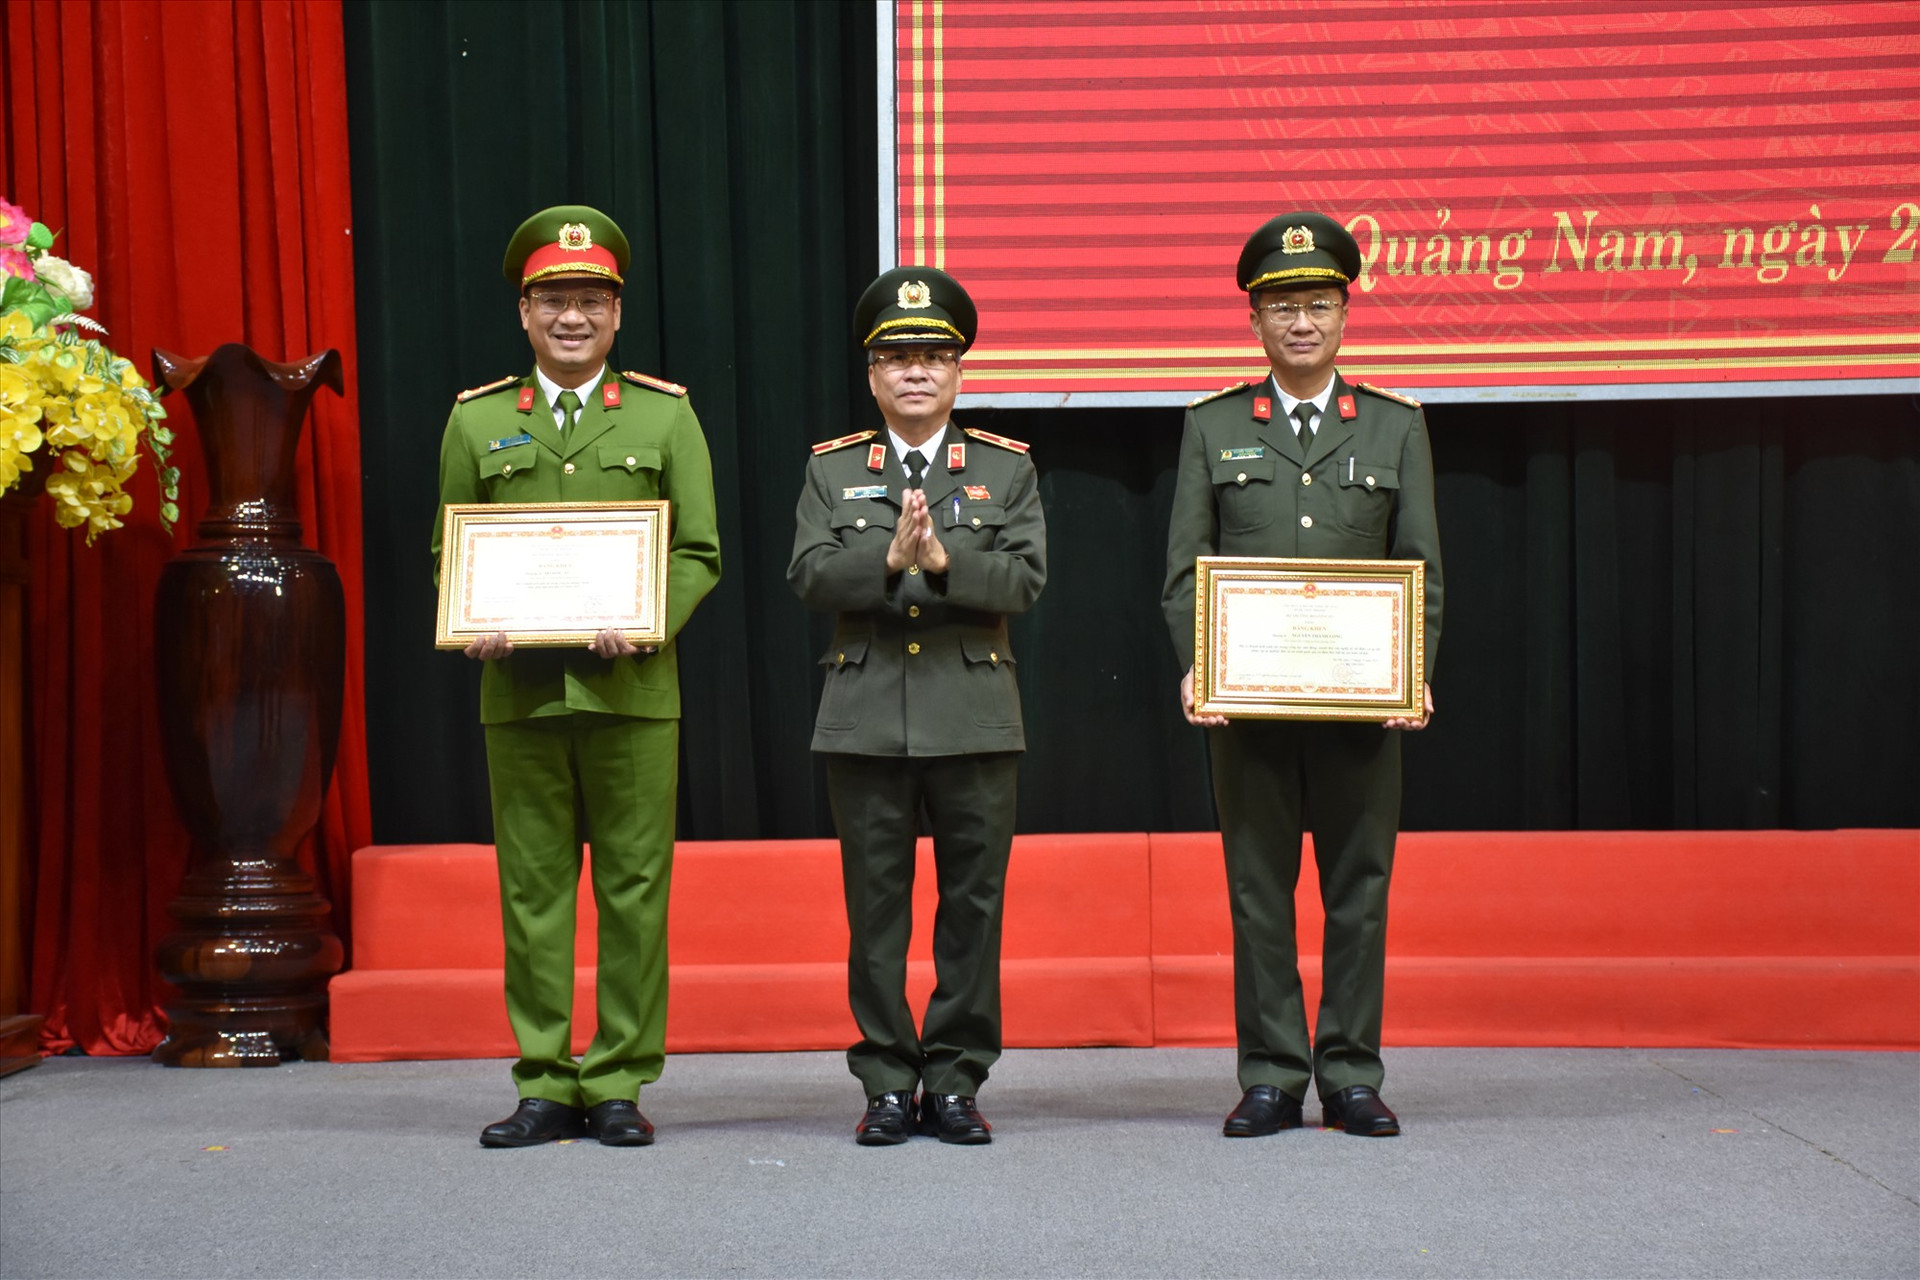 Thiếu tướng Nguyễn Đức Dũng trao bằng khen cho hai Phó Giám đốc Công an tỉnh tại lễ chào cờ sáng nay. Ảnh: P.V